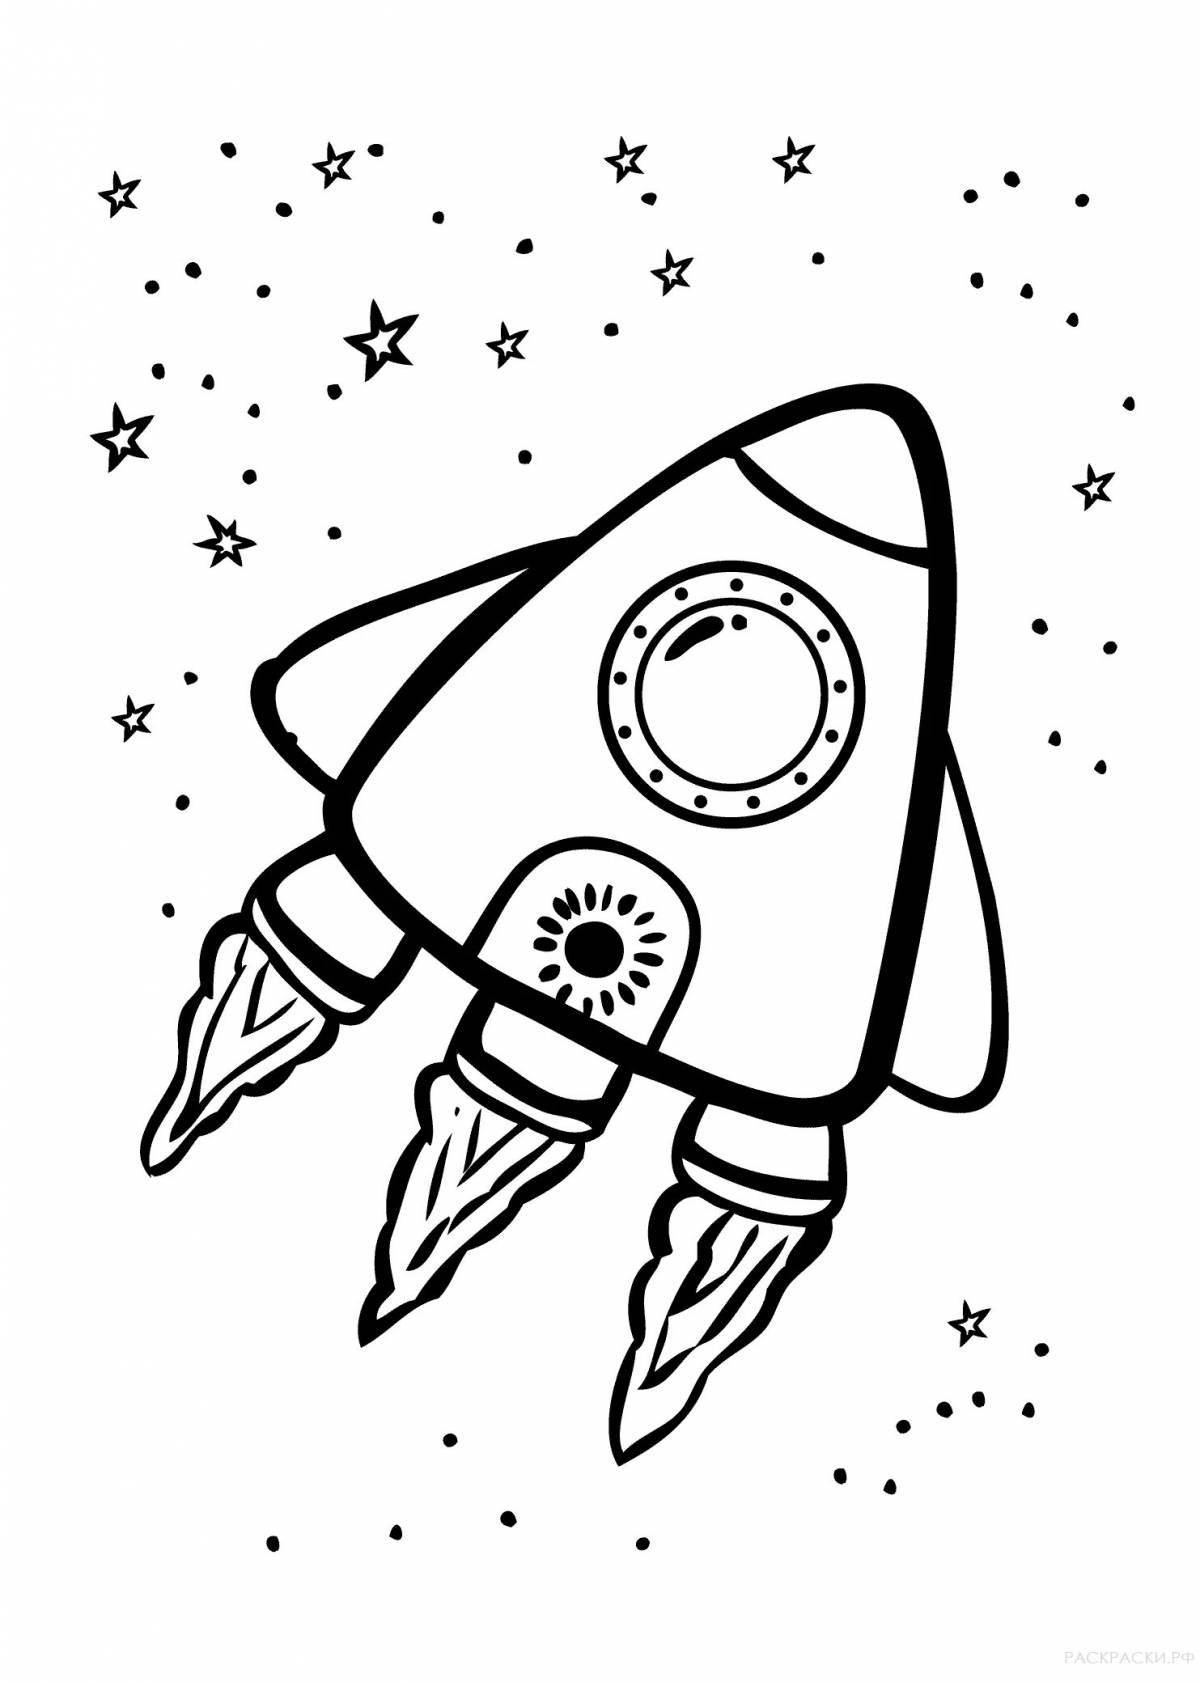 Color-lively rocket coloring page для детей 4-5 лет